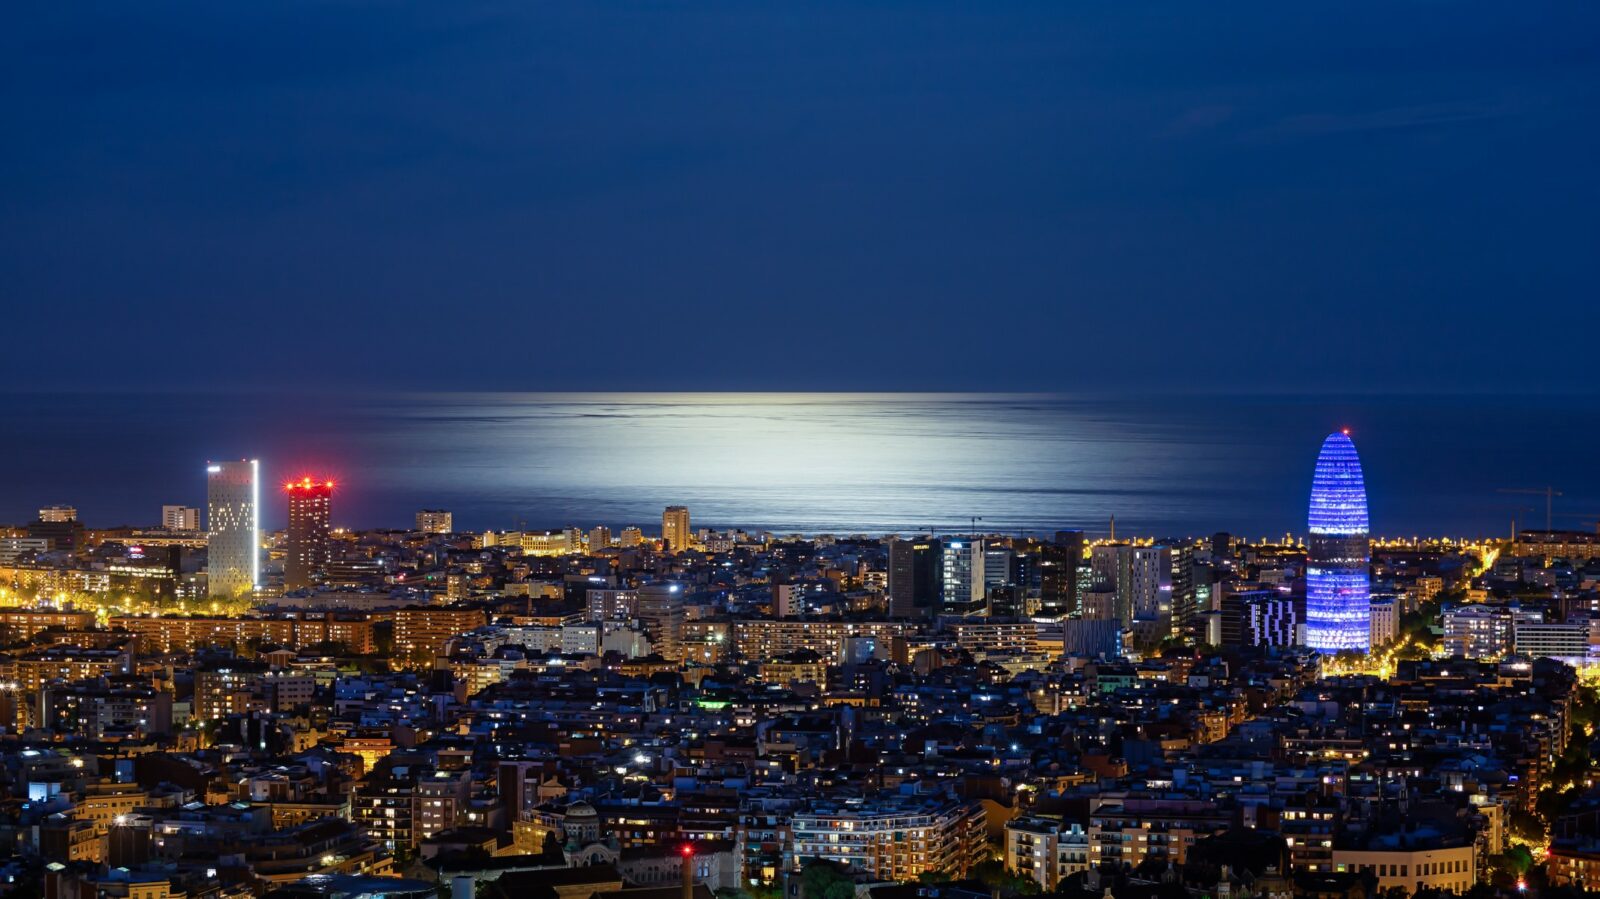 tranquila noche de primavera en la ciudad de barcelona, con la iluminación de la ciudad